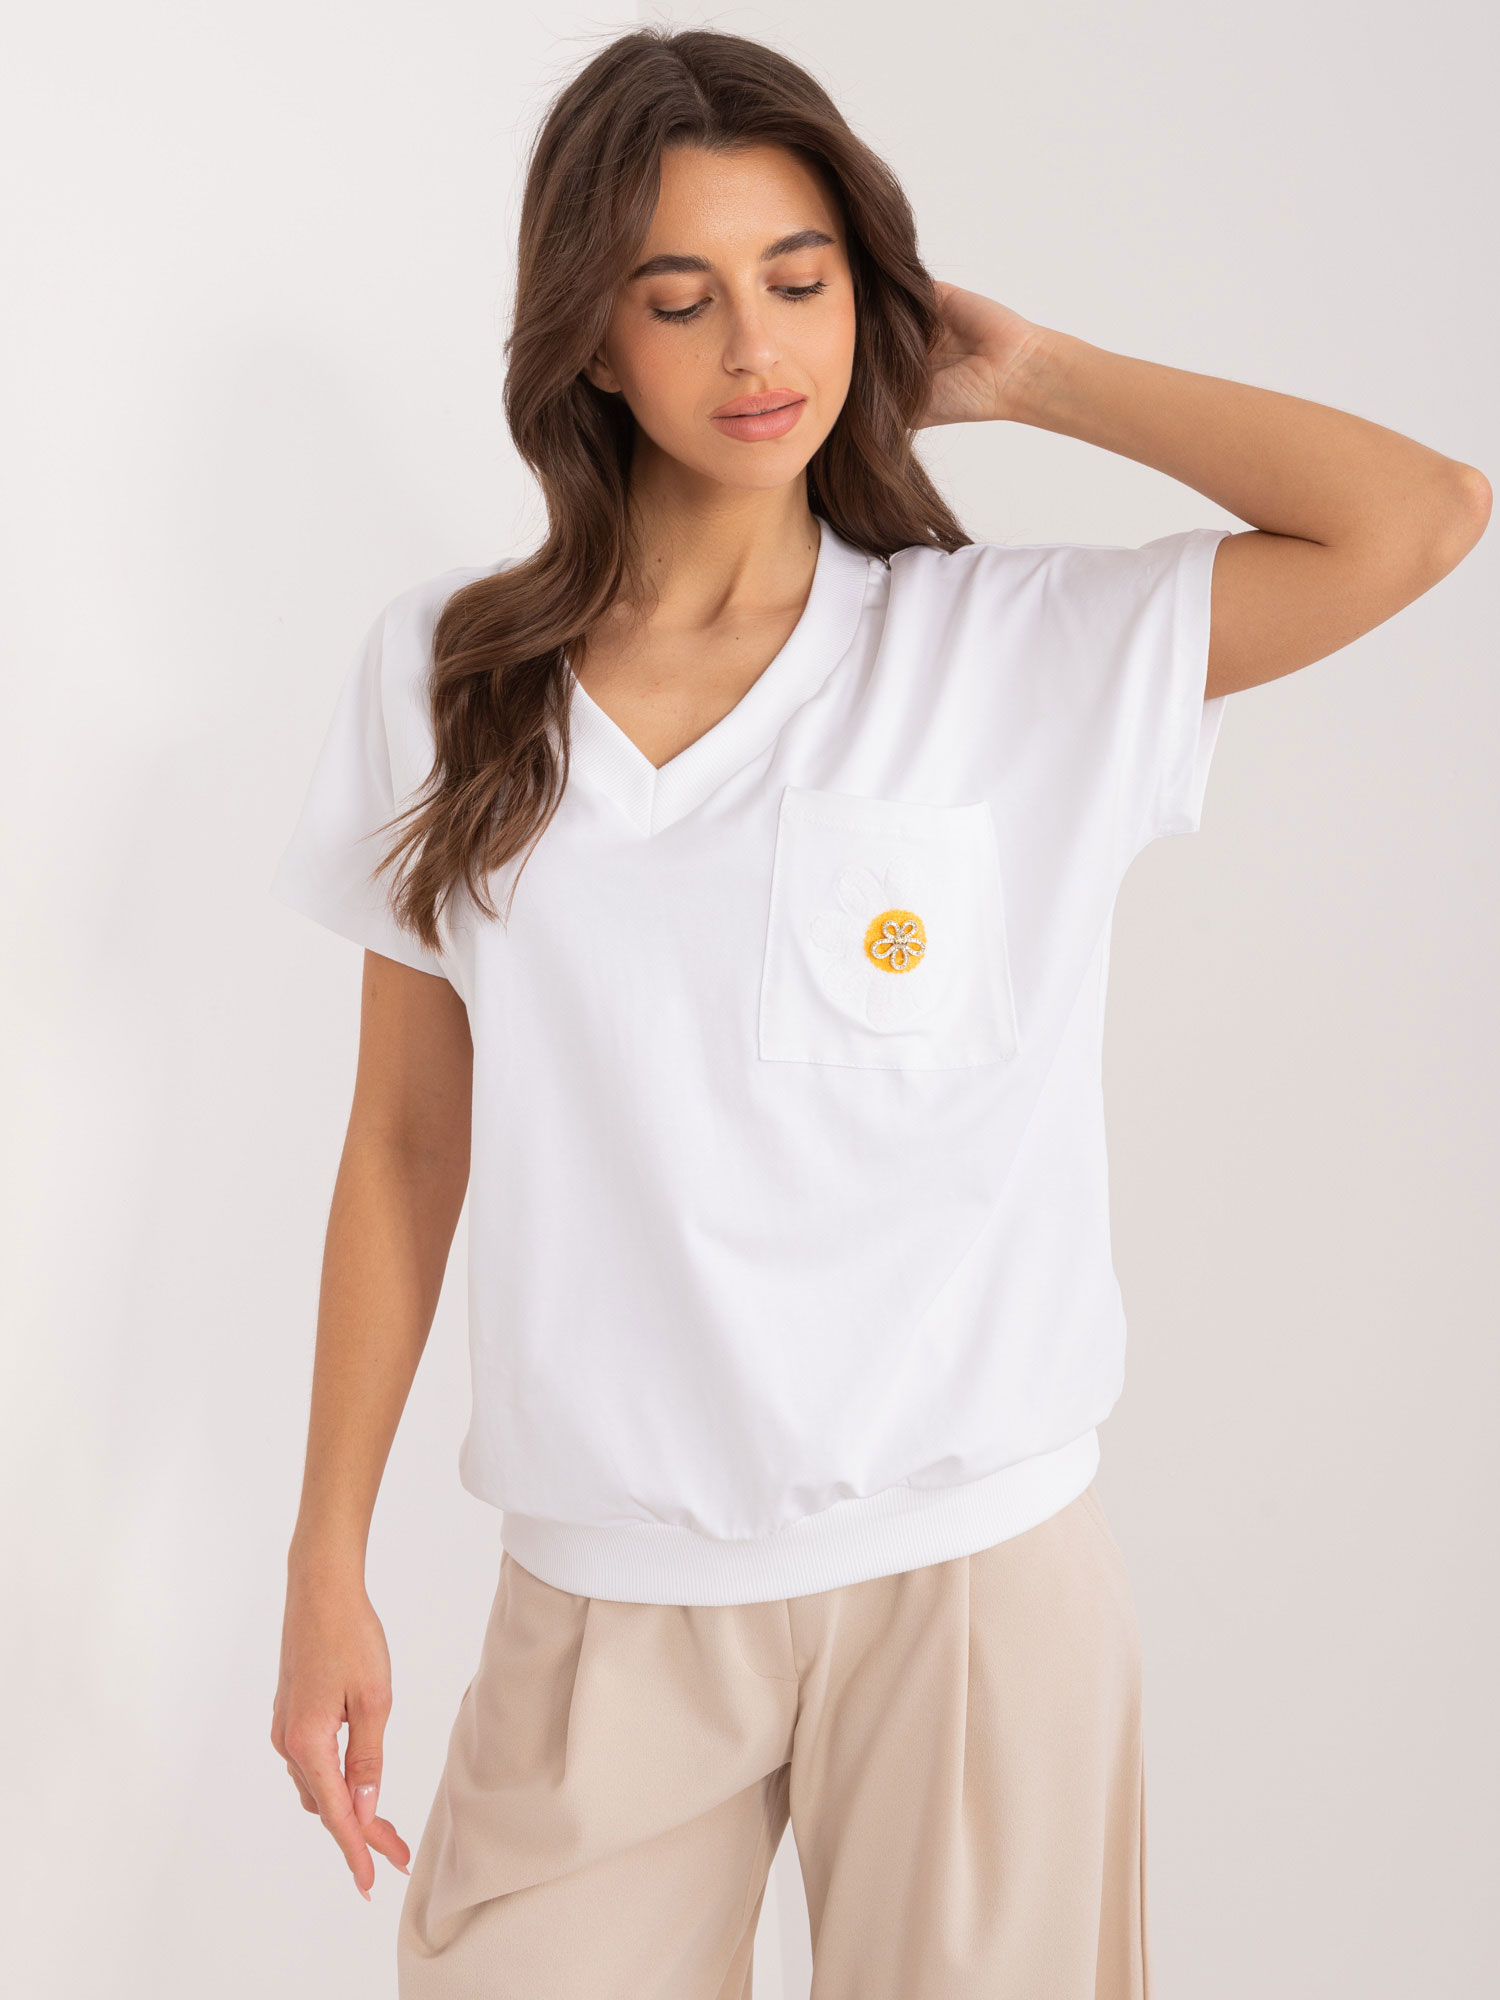 Bílé tričko s výstřihem a výšivkou na kapsy RV-BZ-9626.28-white Velikost: L/XL